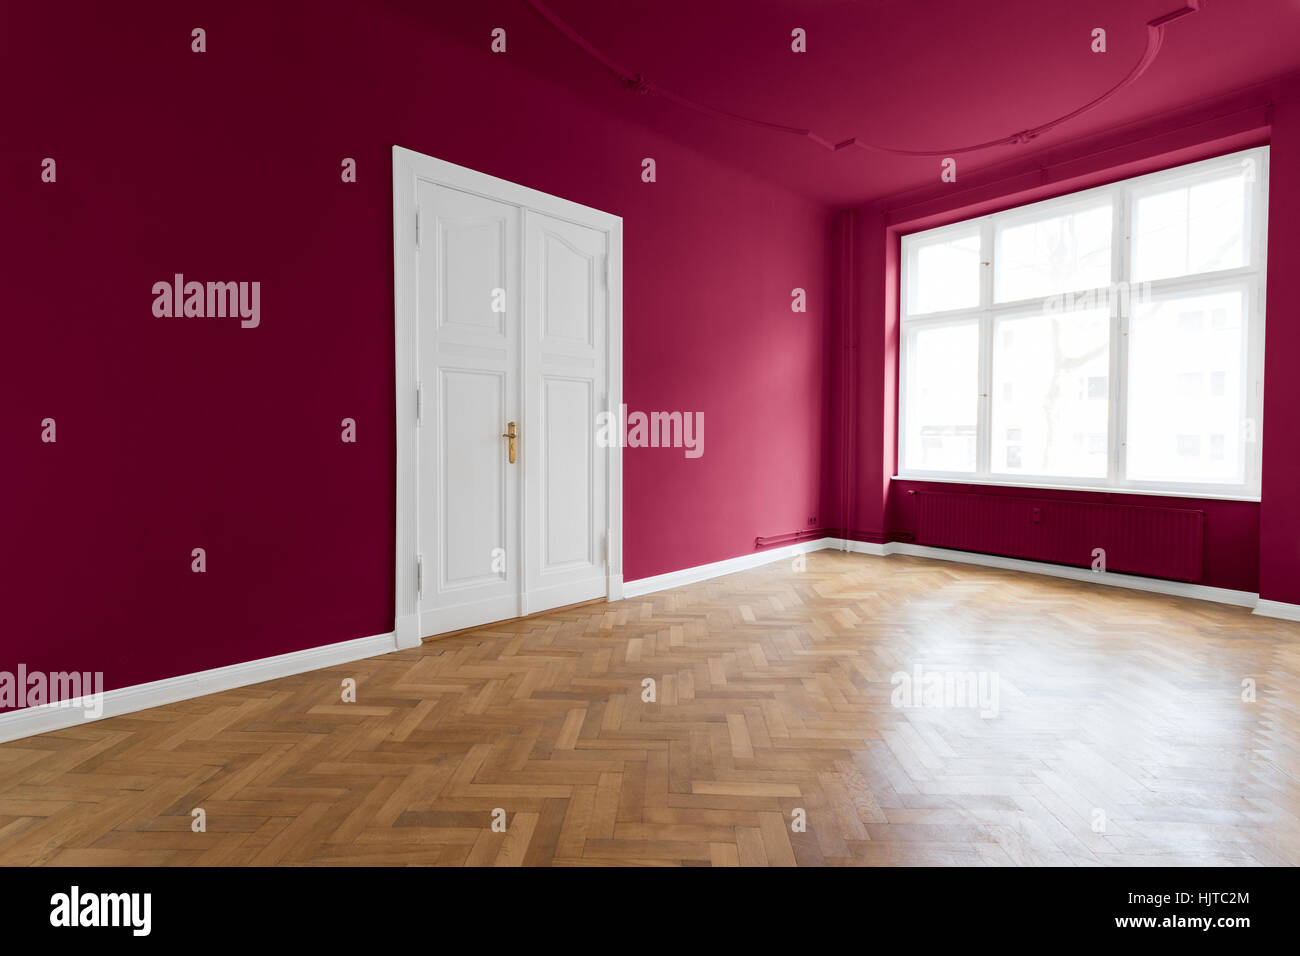 Salle vide avec plancher en bois, murs peints en rouge Banque D'Images